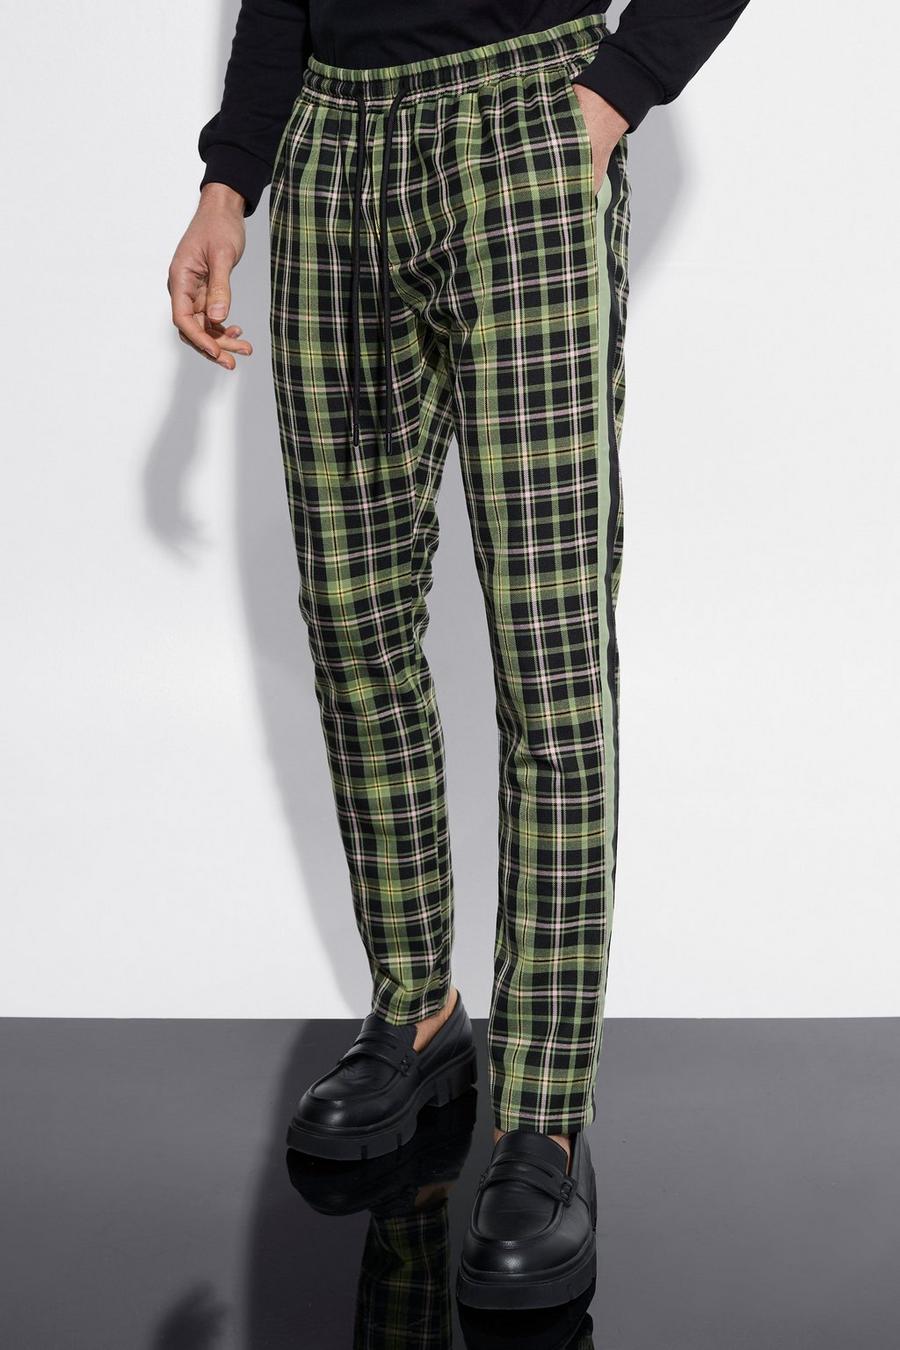 Pantaloni a quadri Skinny Fit elasticizzati con striscia laterale, Green gerde